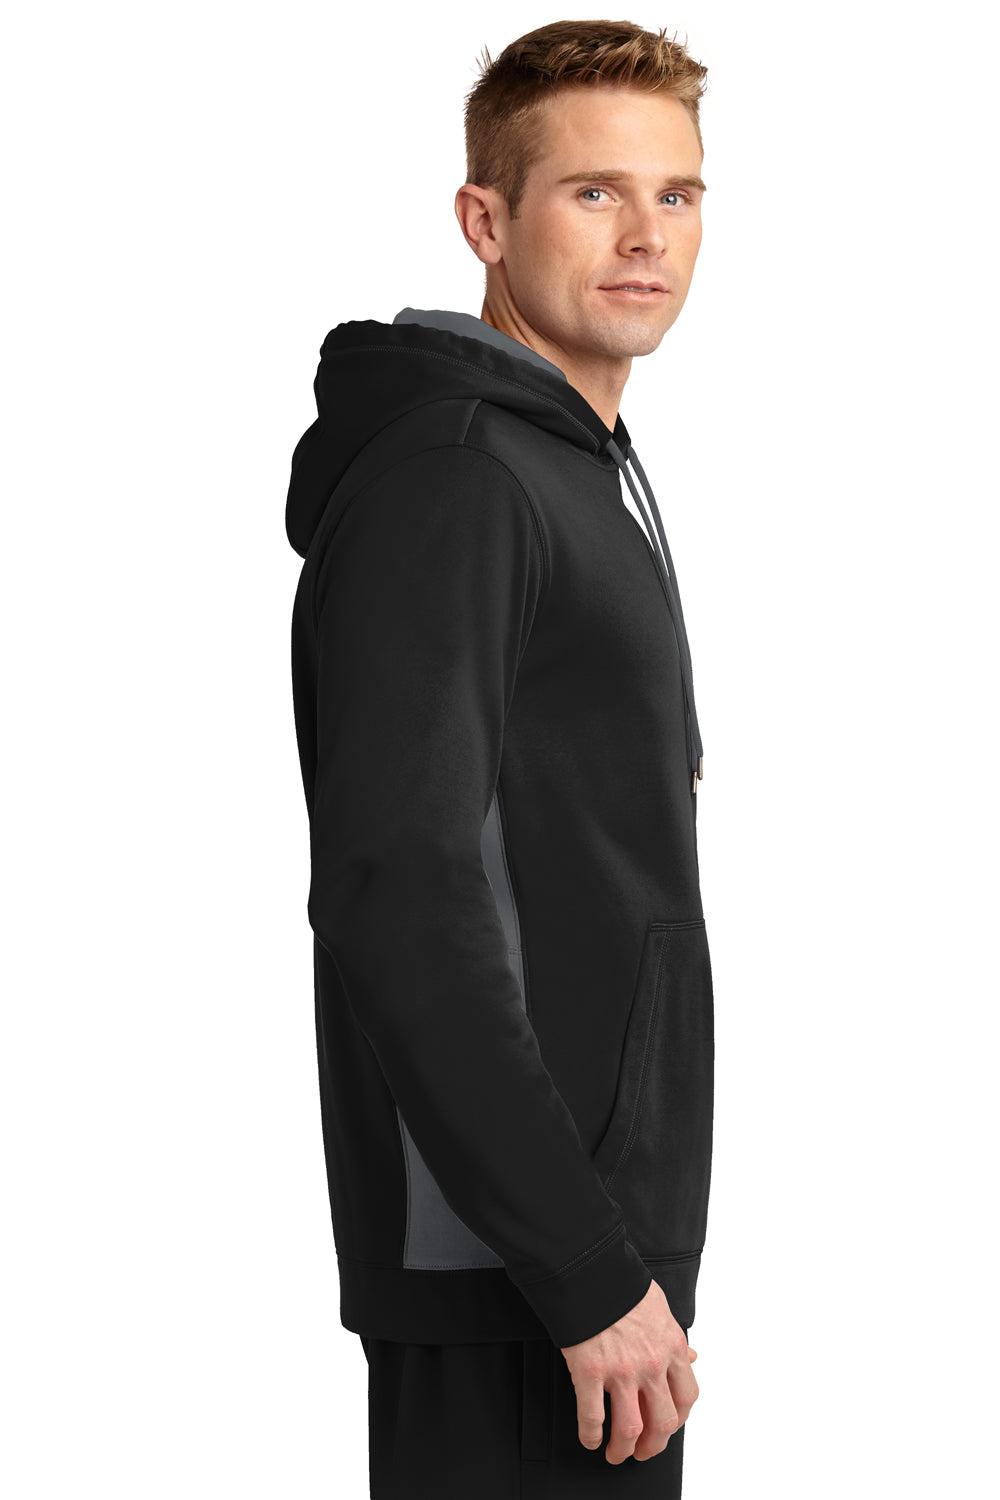 Sport-Tek ST235 Mens Sport-Wick Moisture Wicking Fleece Hooded Sweatshirt Hoodie Black/Grey Side